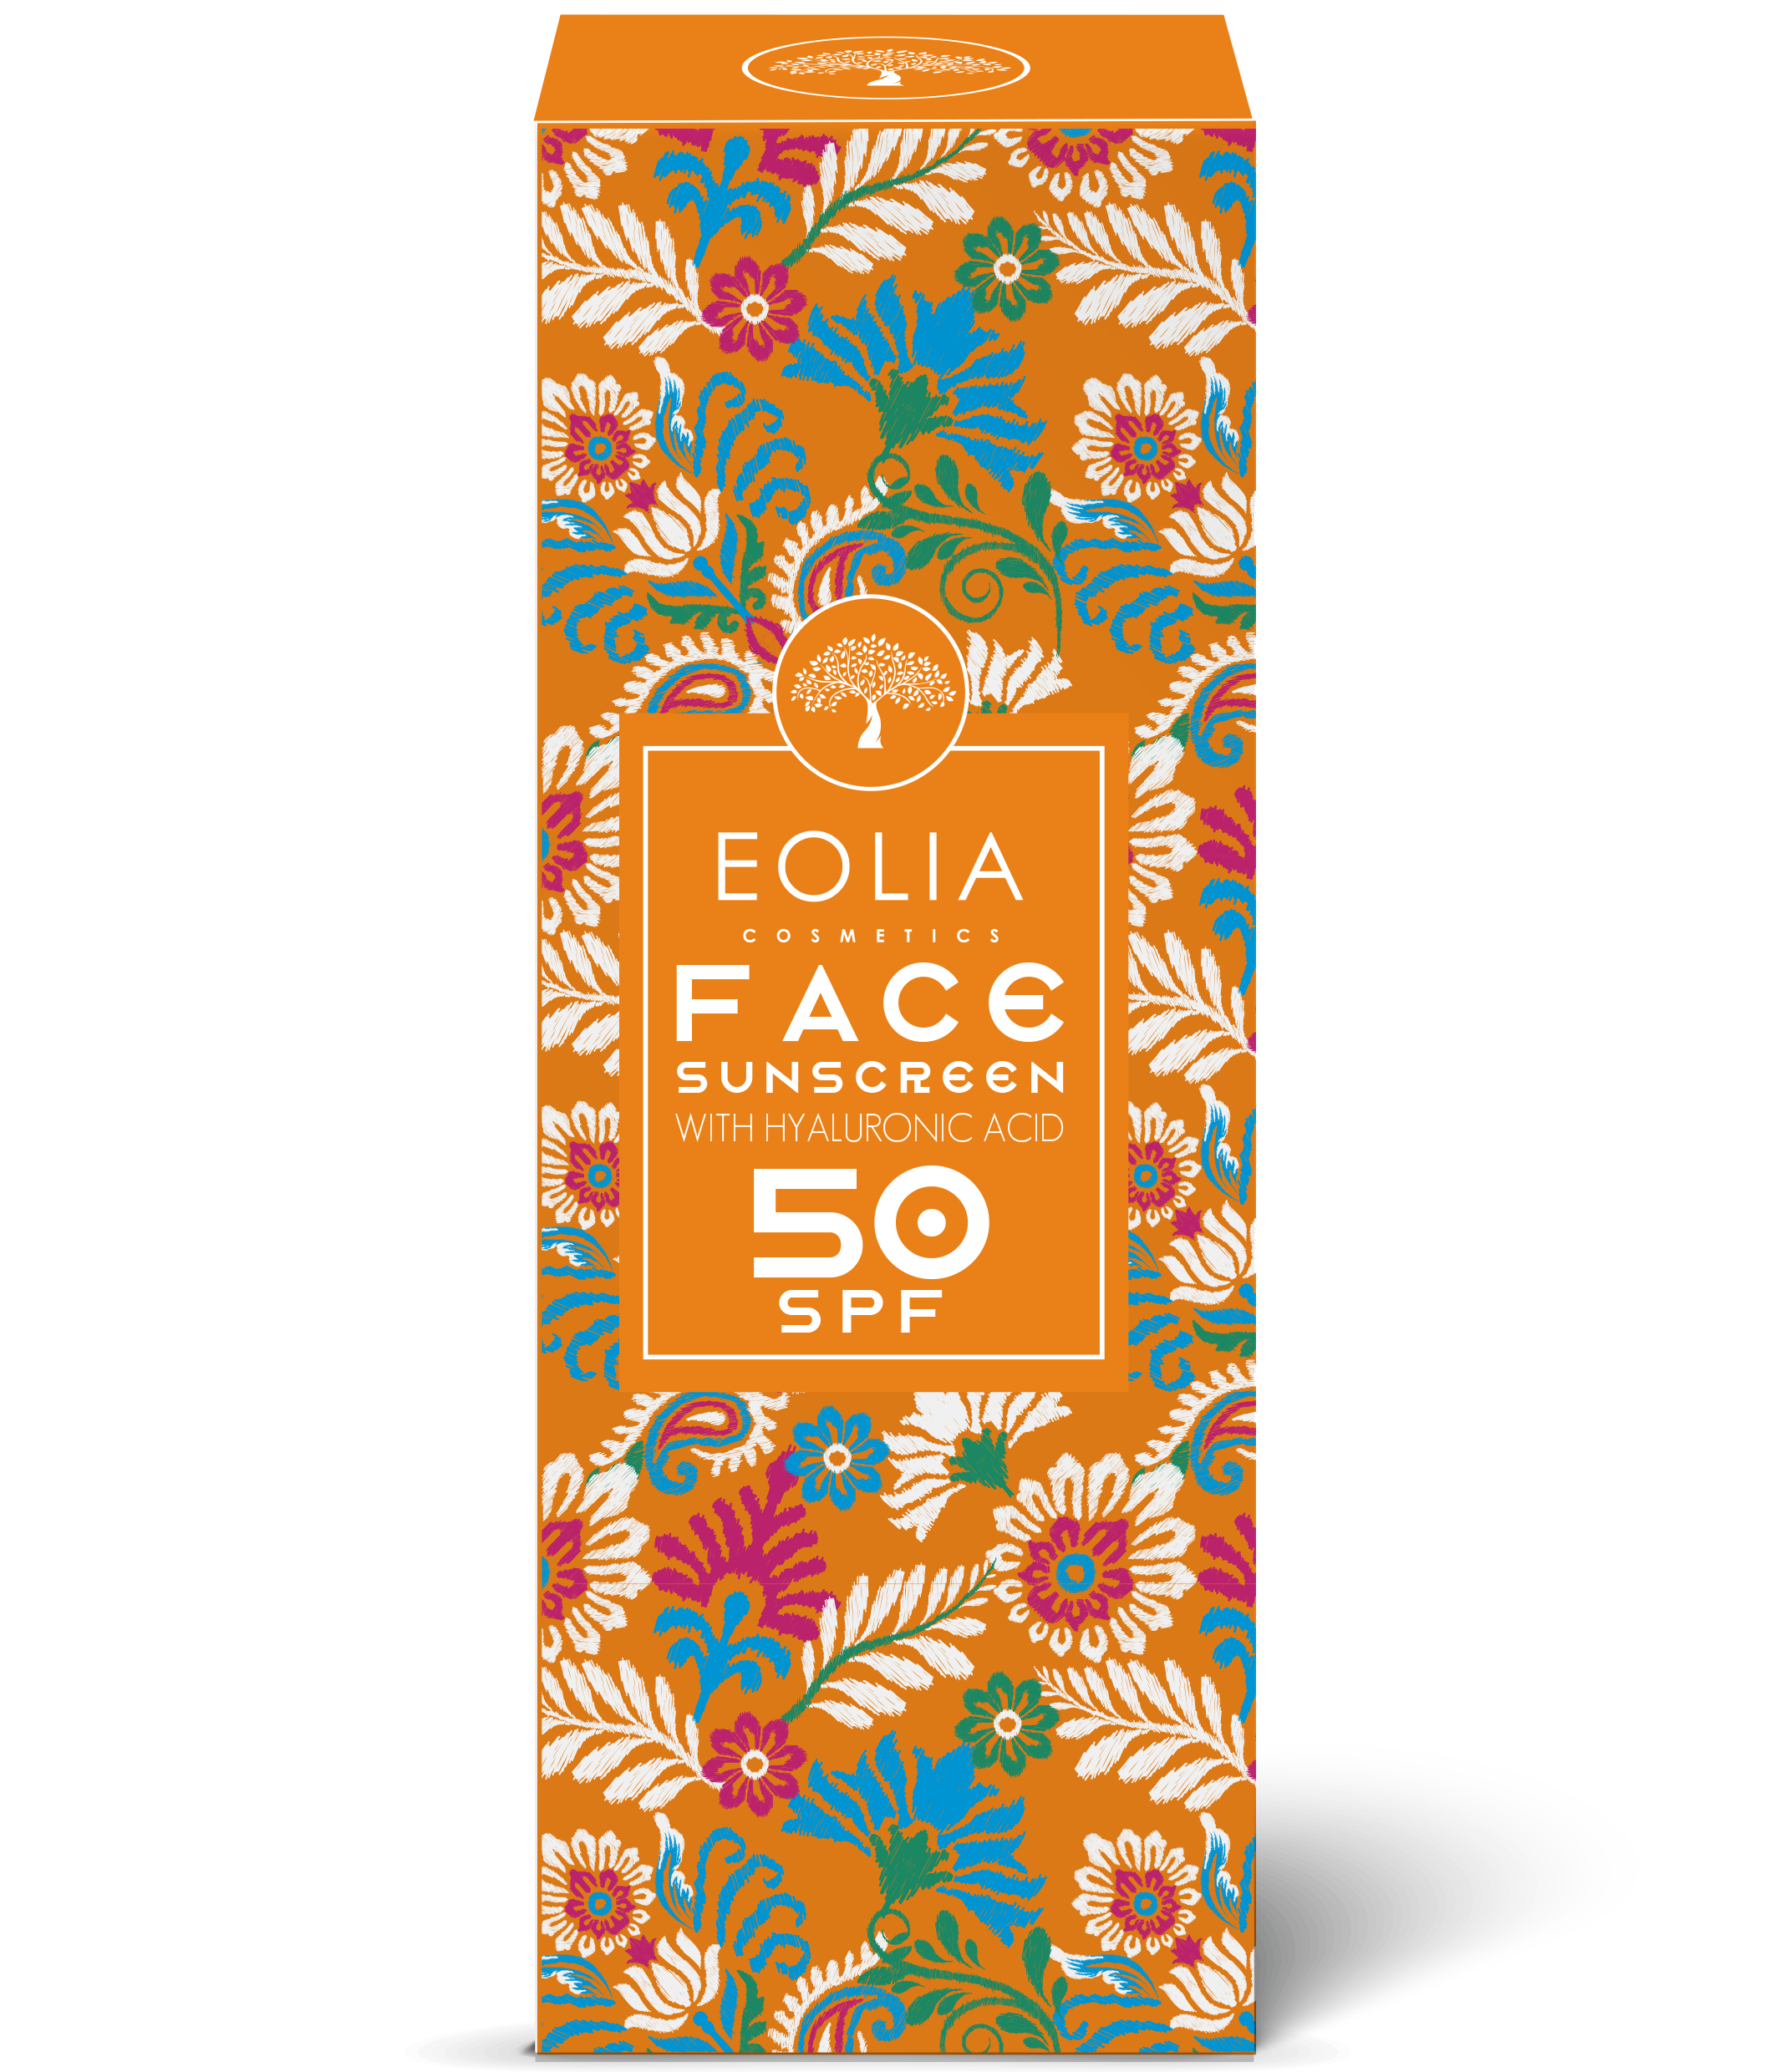 3D EOLIA FaceSunscreen Box